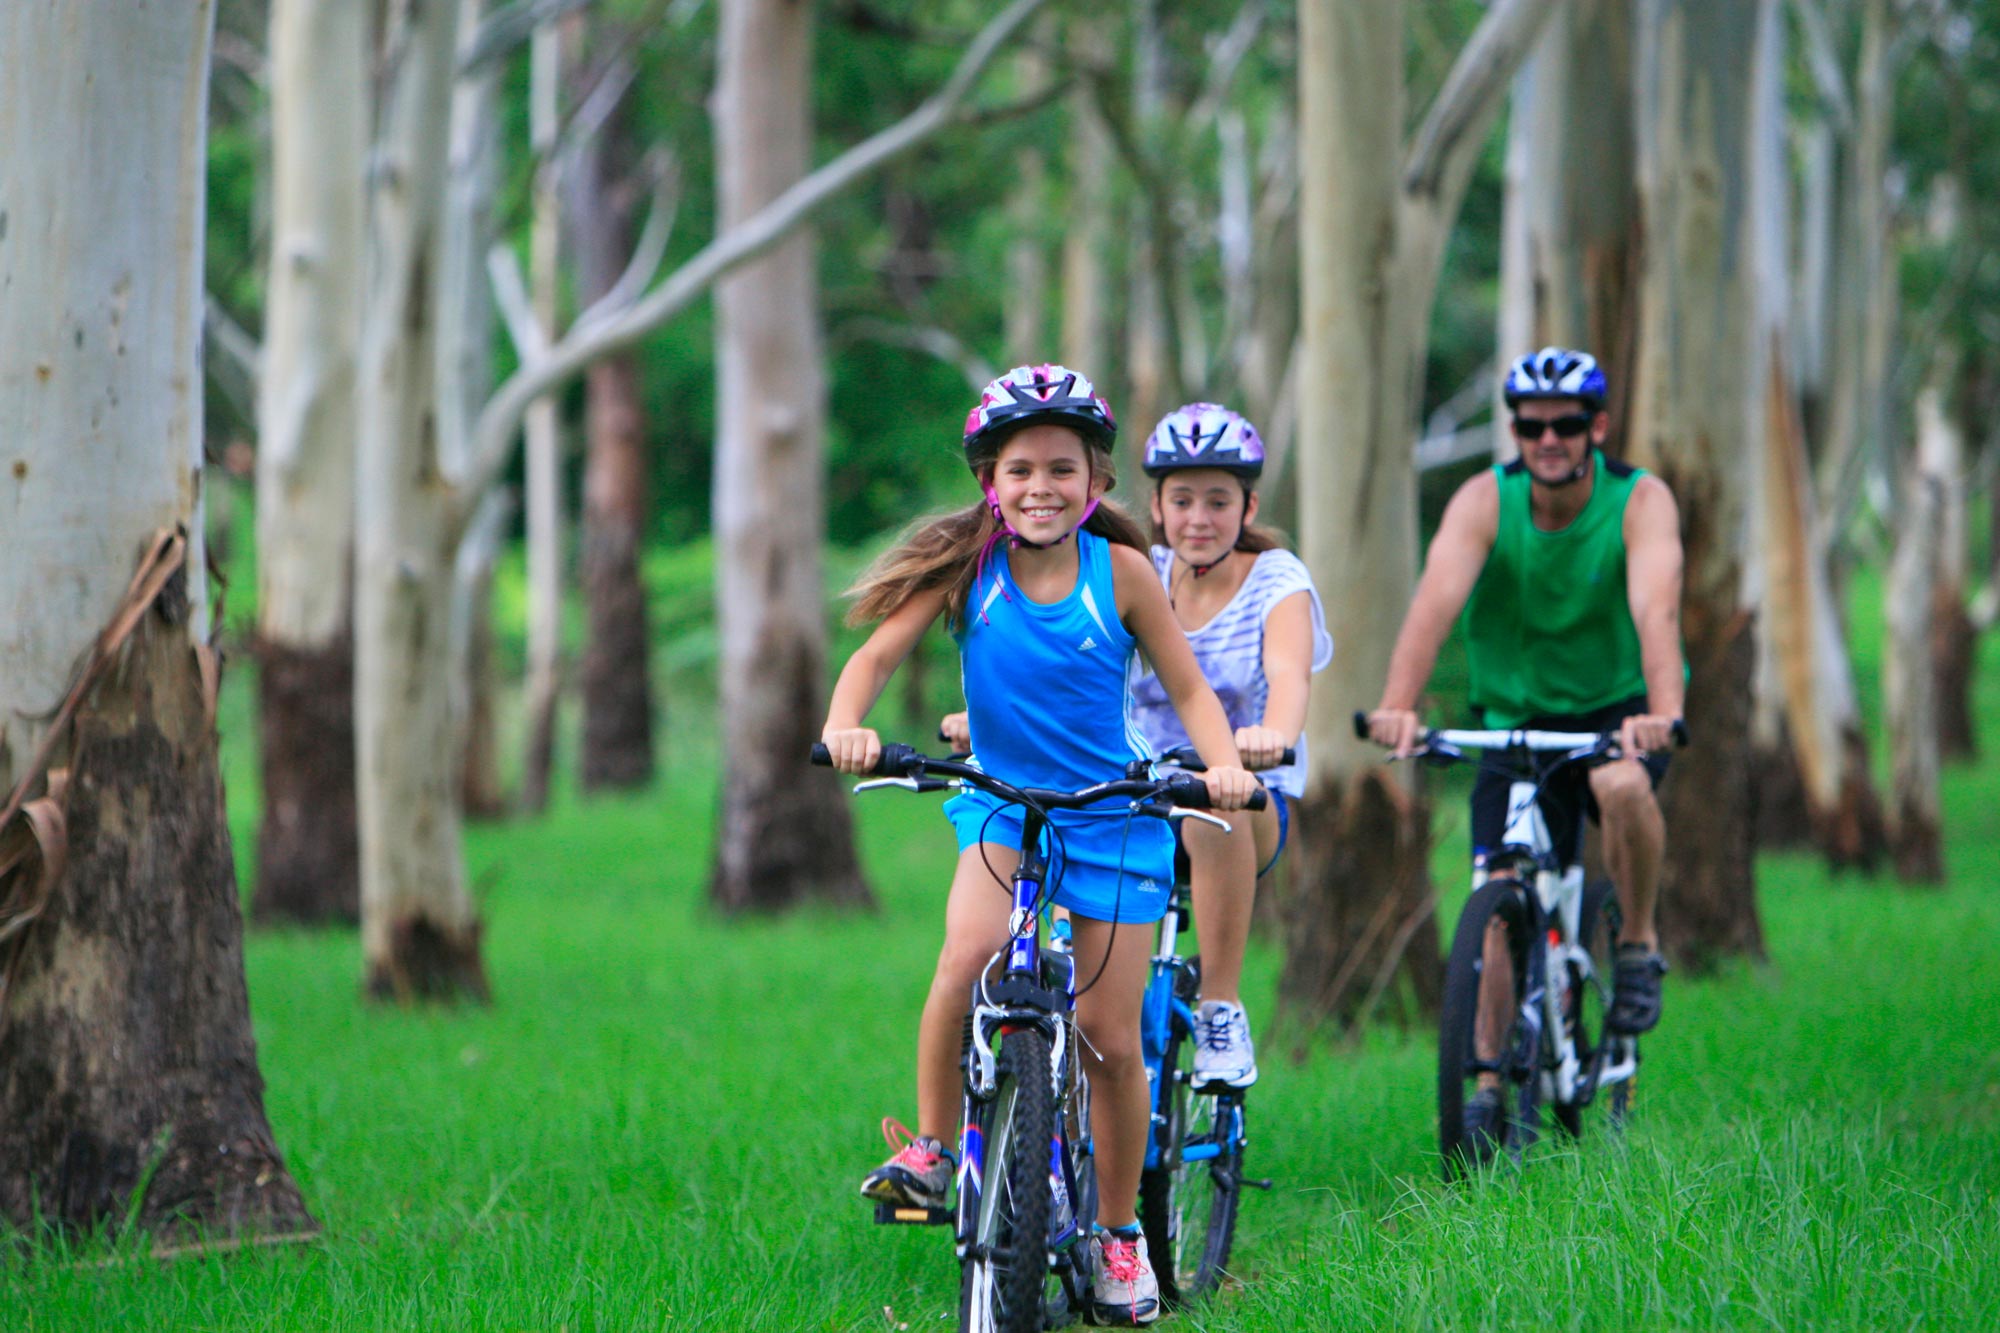 Smiling family riding bikes through green grass